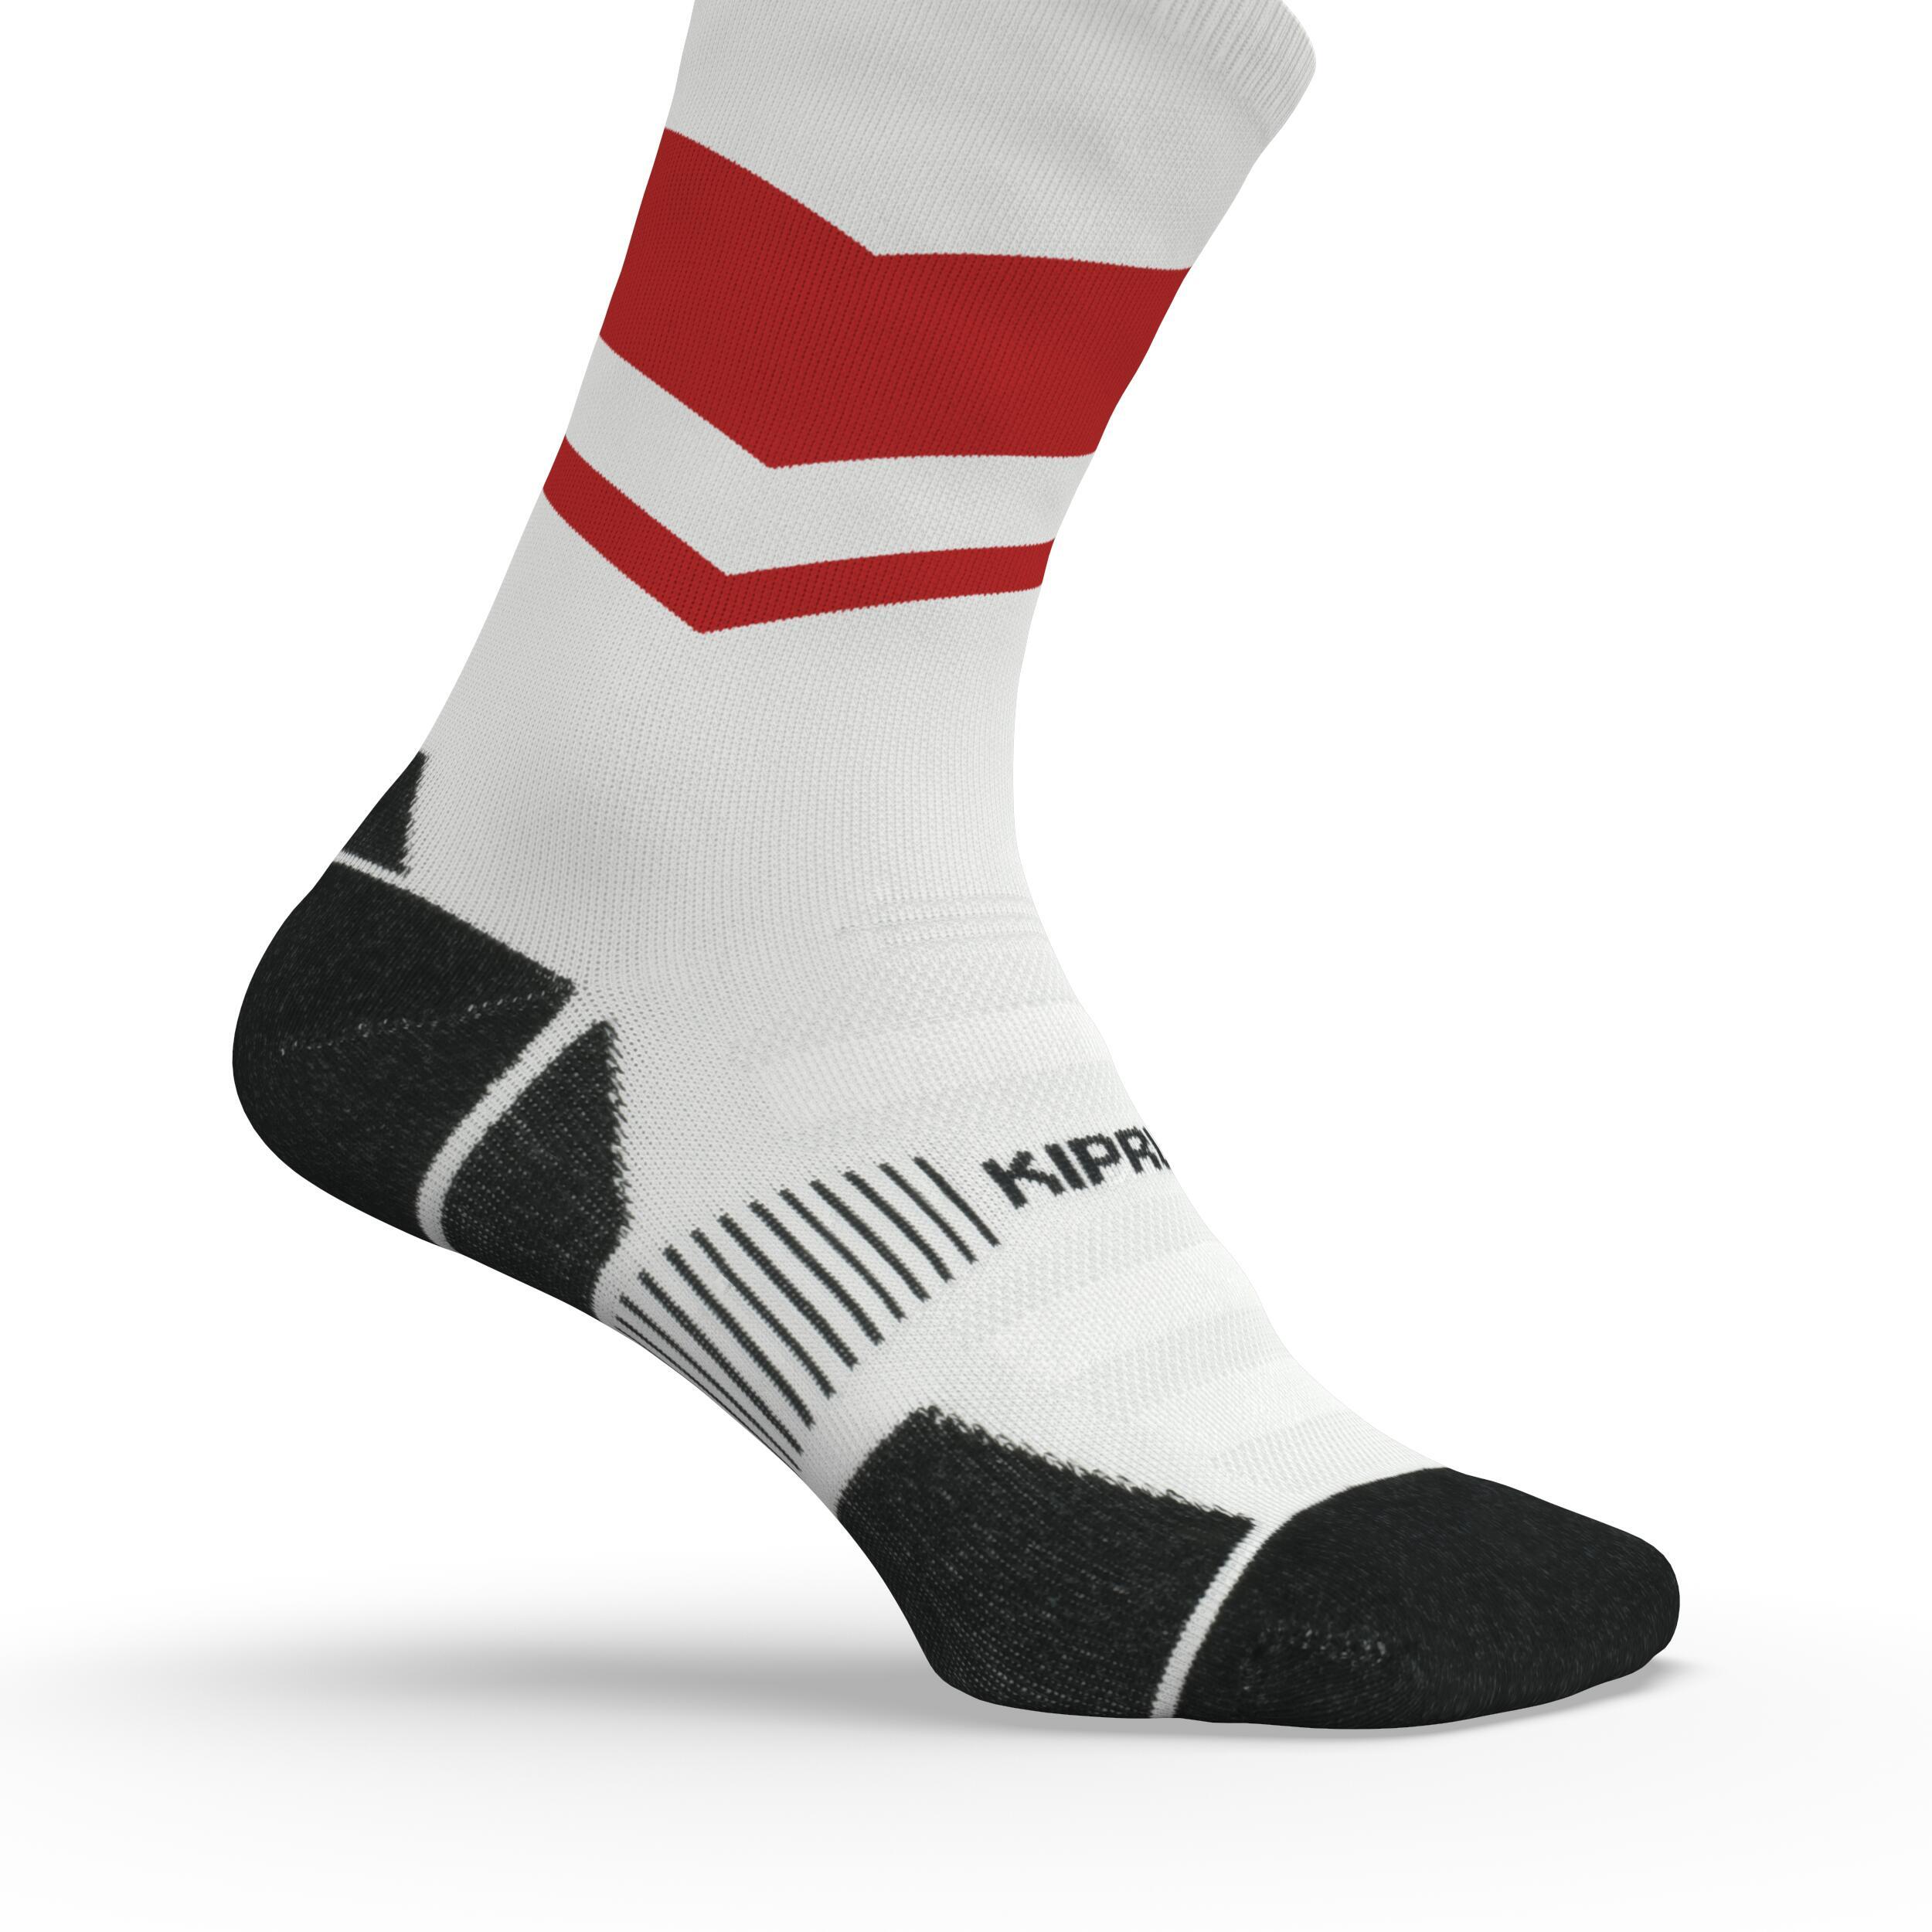 Run900 Mid-Calf Thick Running Socks - White/Red 4/7